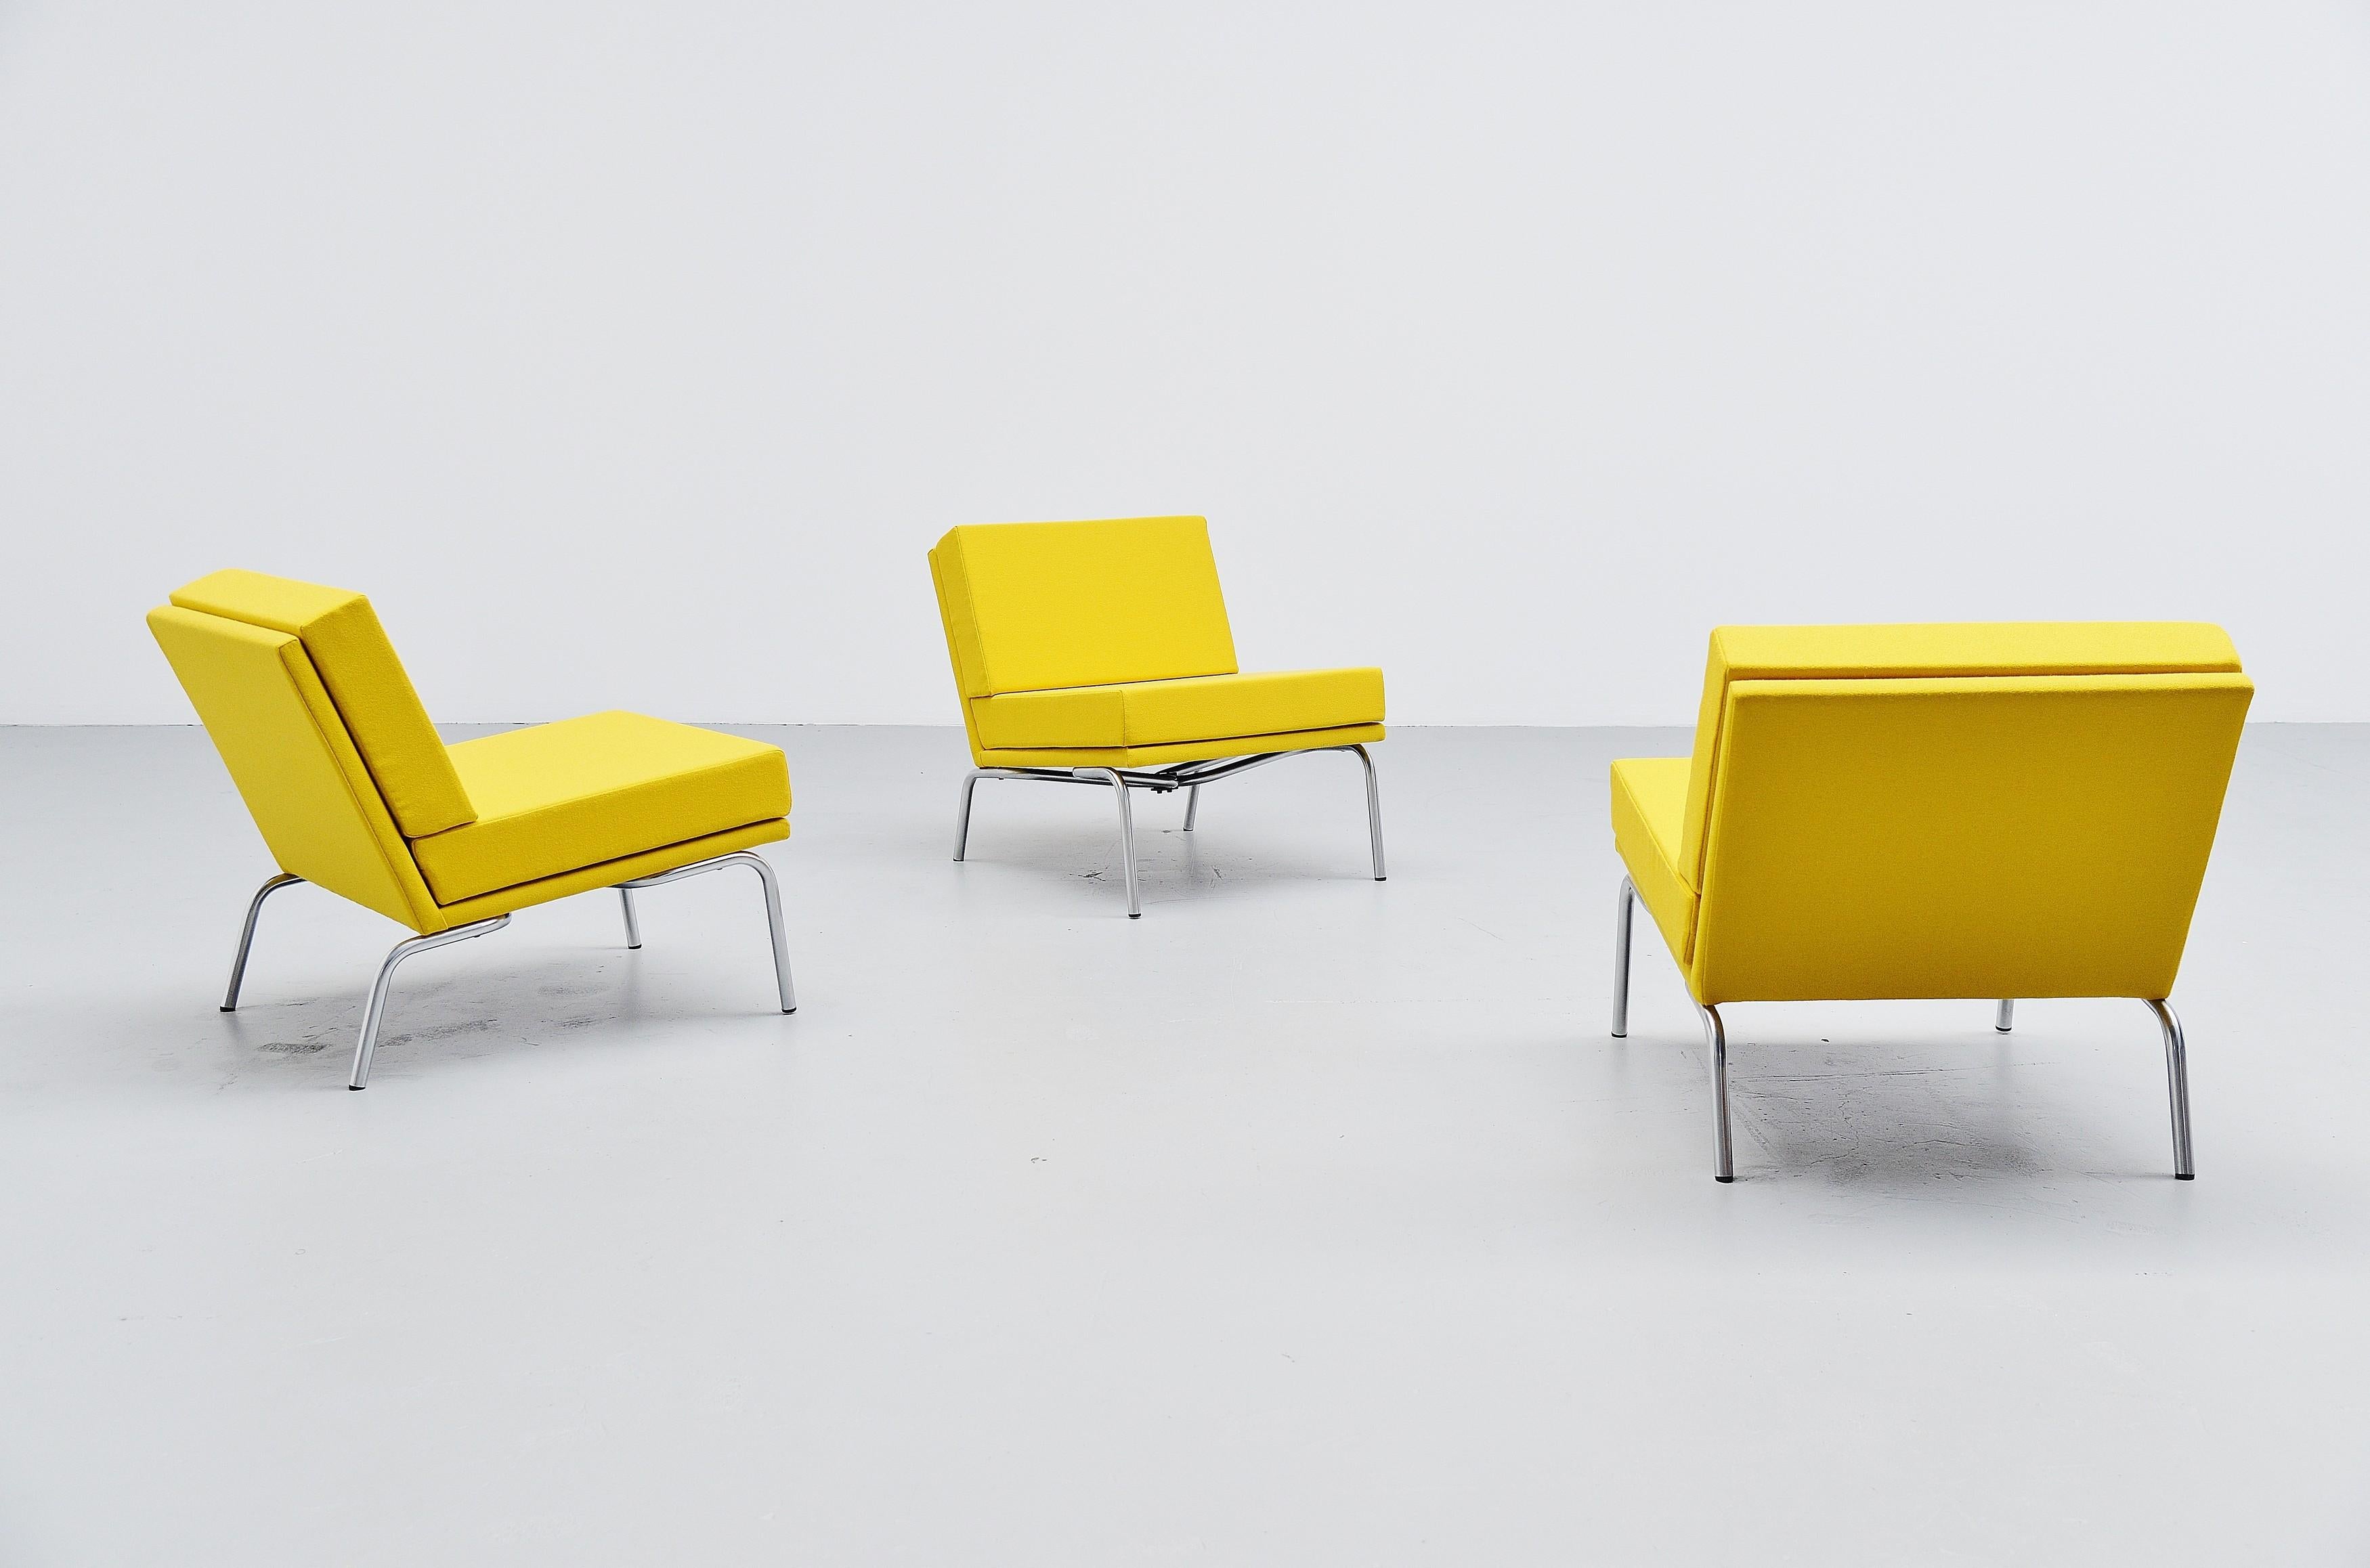 Rare ensemble de 3 chaises longues modèle SZ04 conçu par Martin Visser et fabriqué par 't Spectrum, Pays-Bas 1964. Ces chaises longues peuvent être mises de côté afin d'être également utilisées comme système de canapé modulaire. Ce modèle n'a été